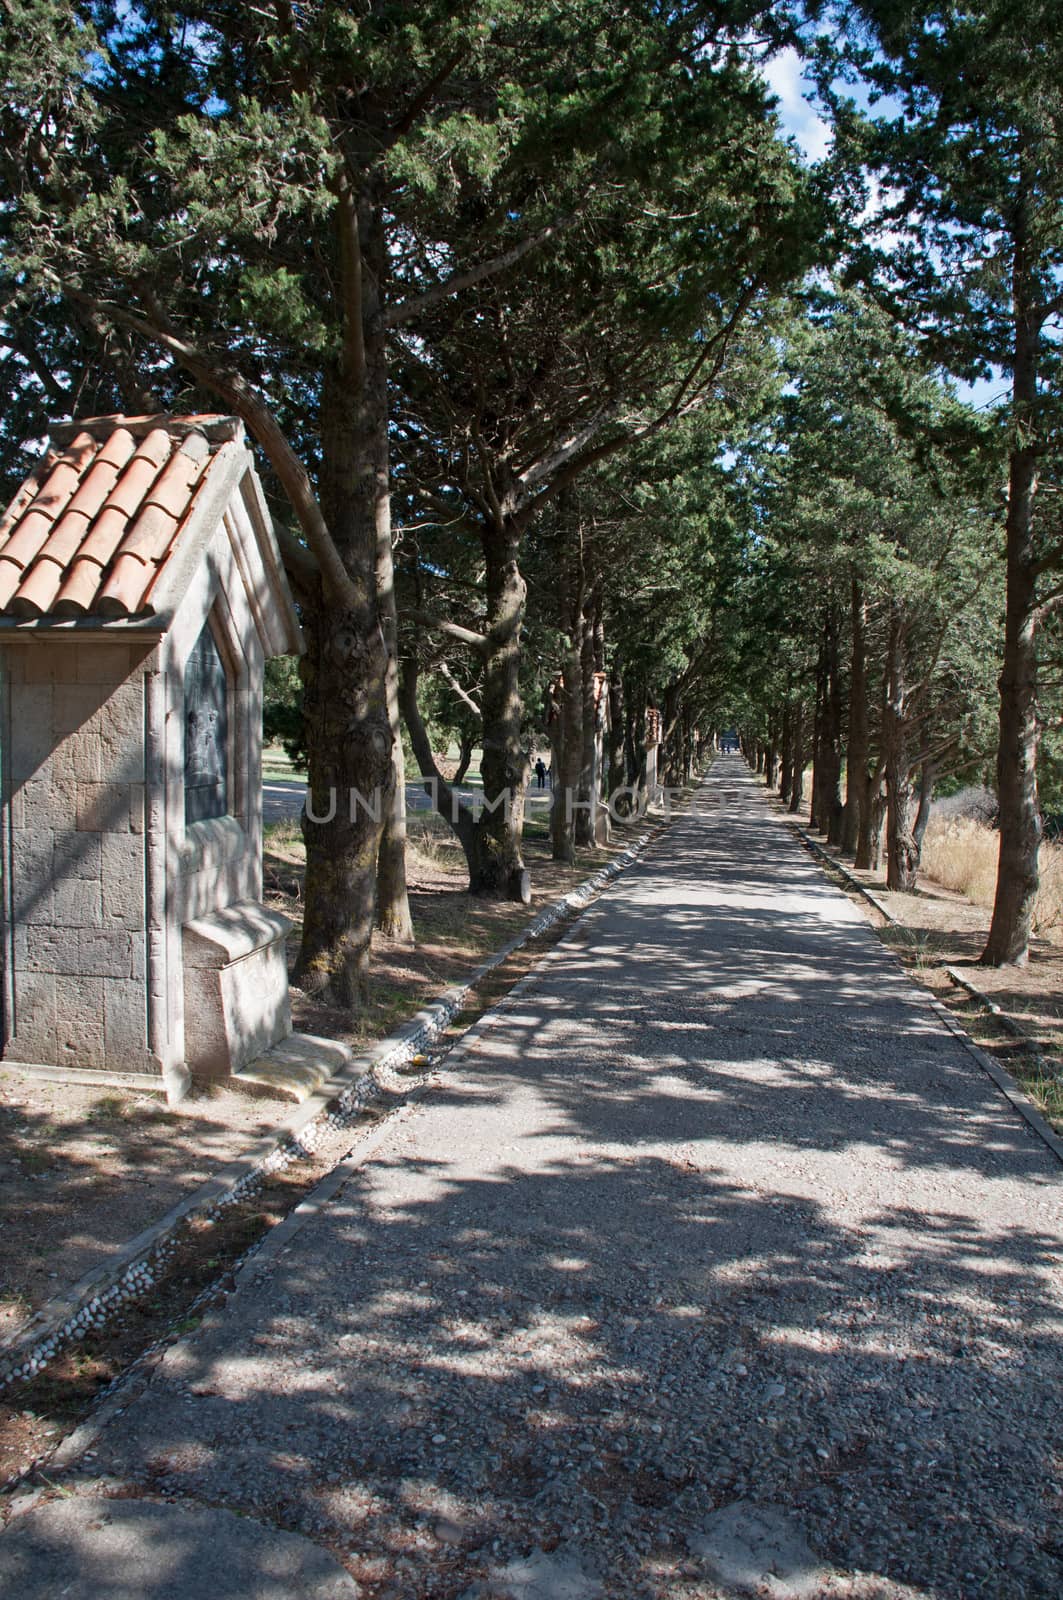 Calvary avenue of trees at Ialyssos by dpe123